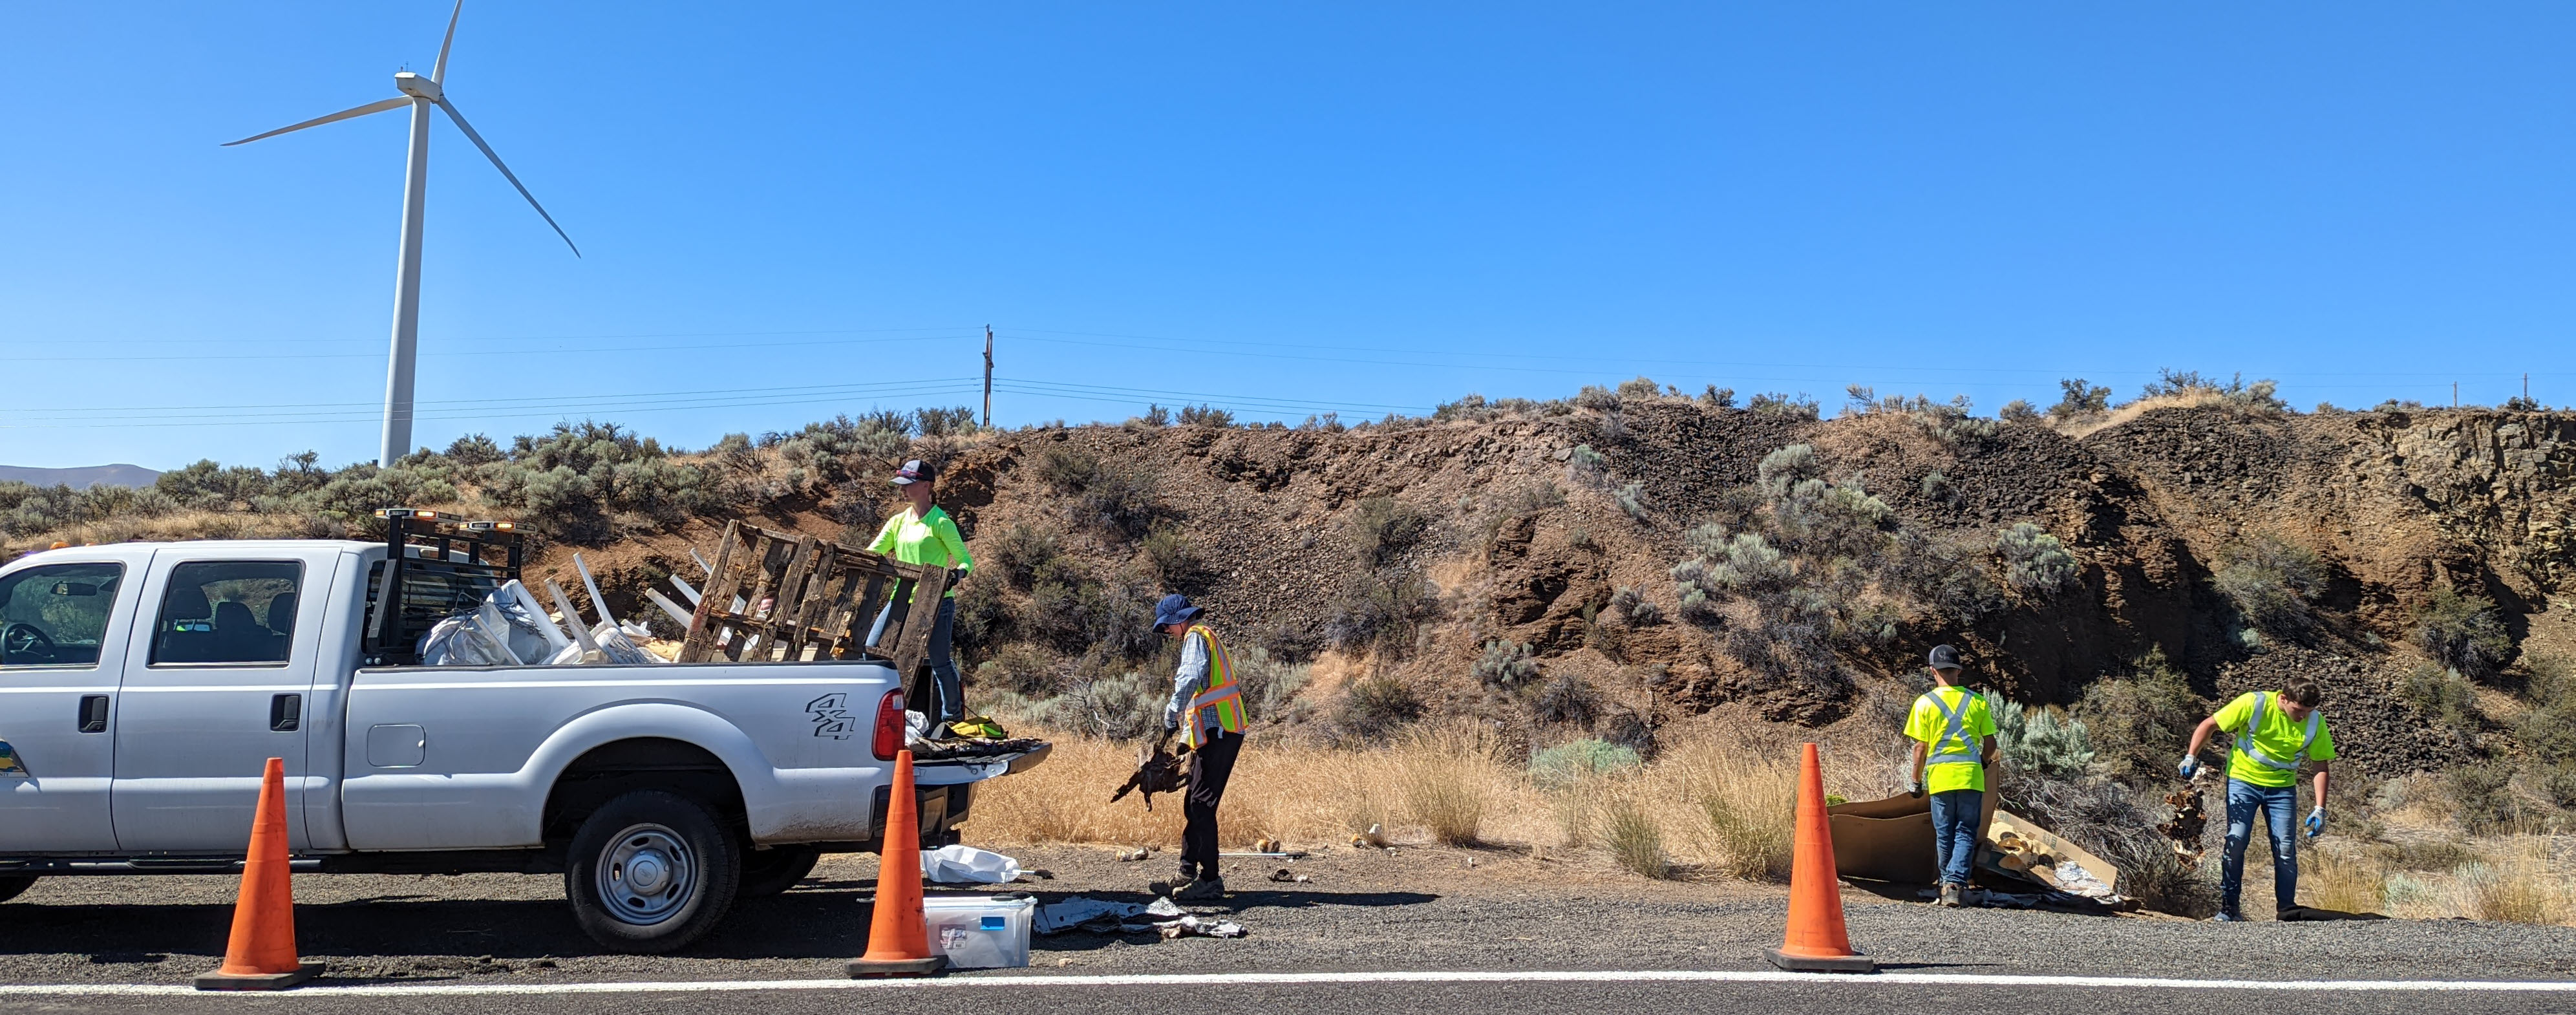 Litter Crew picking up garbage highway